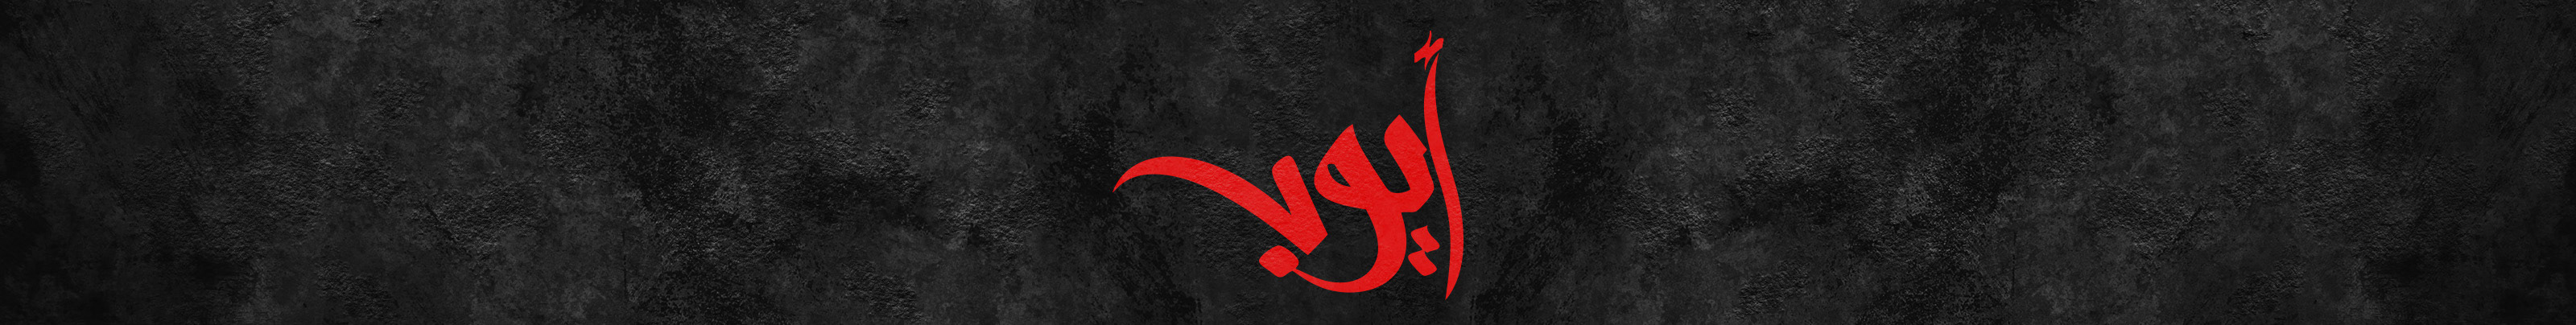 Ayoub Salah's profile banner